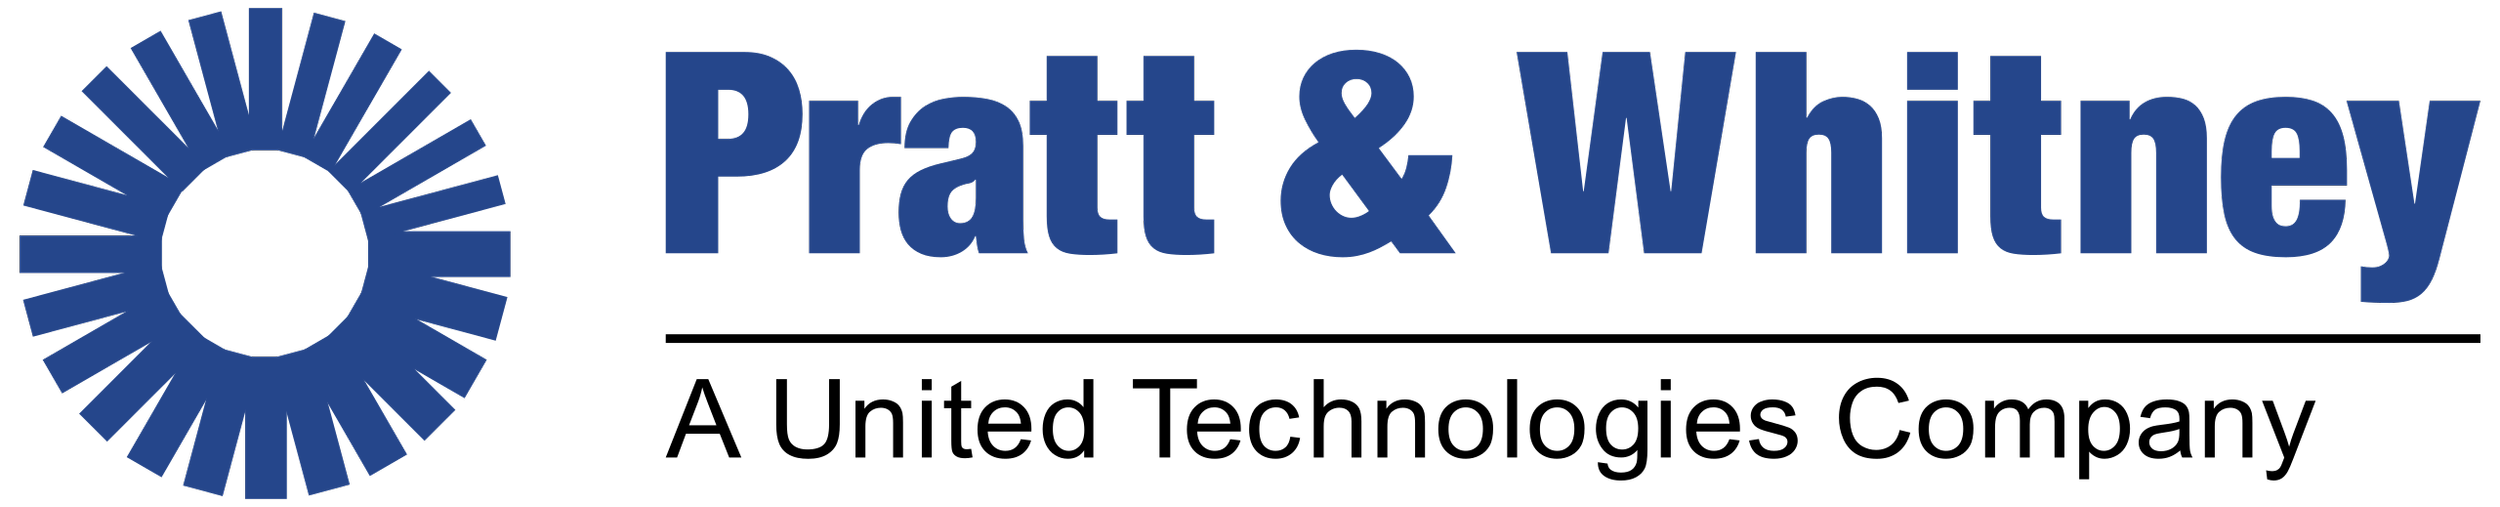 2560px-Pratt-&-Whitney-Logo.svg.png